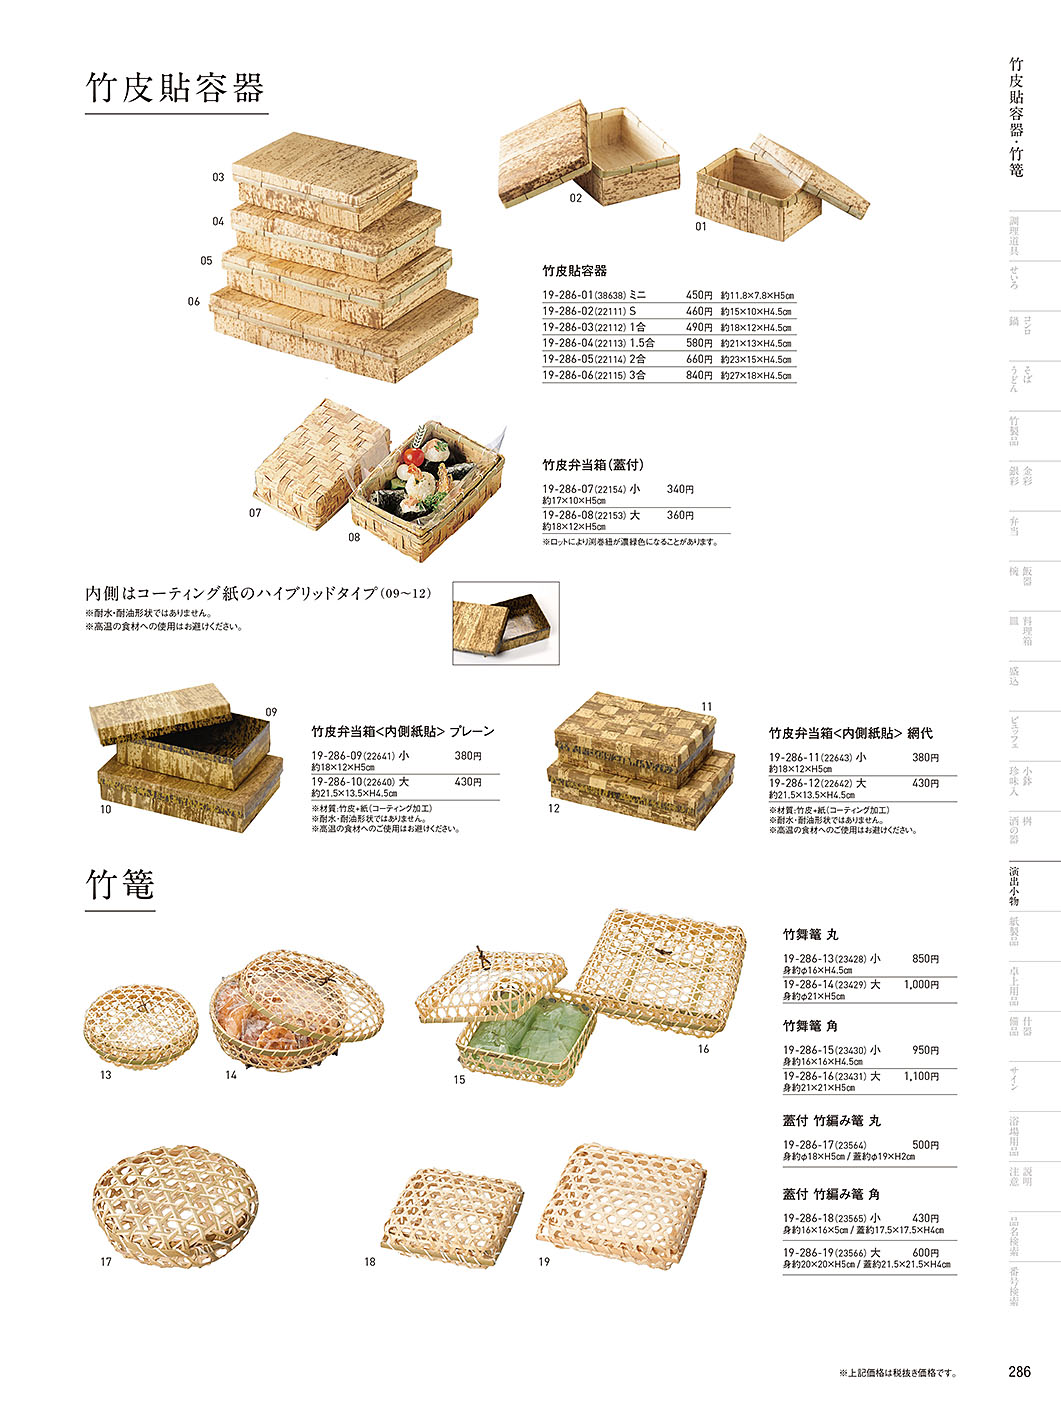 和食器カタログ P.286-演出小物／すだれ弁当･パッケージ